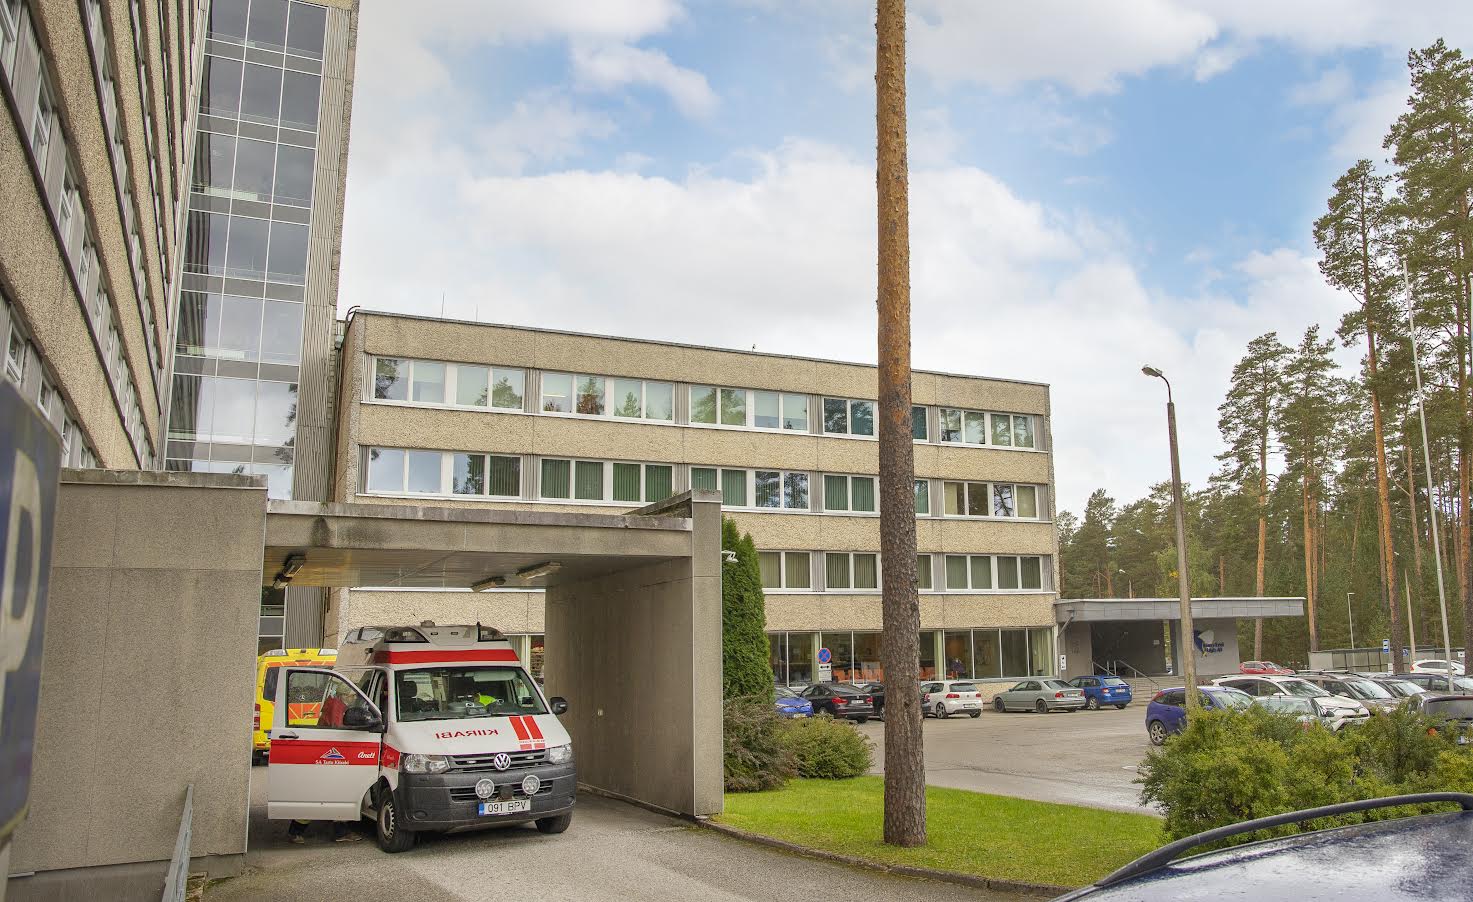 Lõuna-Eesti haiglas on nädala alguse seisuga nakkusosakonnas ravil seitse koroonapatsienti ning veel jagub ruumi vaid ühele saabujale. Foto: AIGAR NAGEL